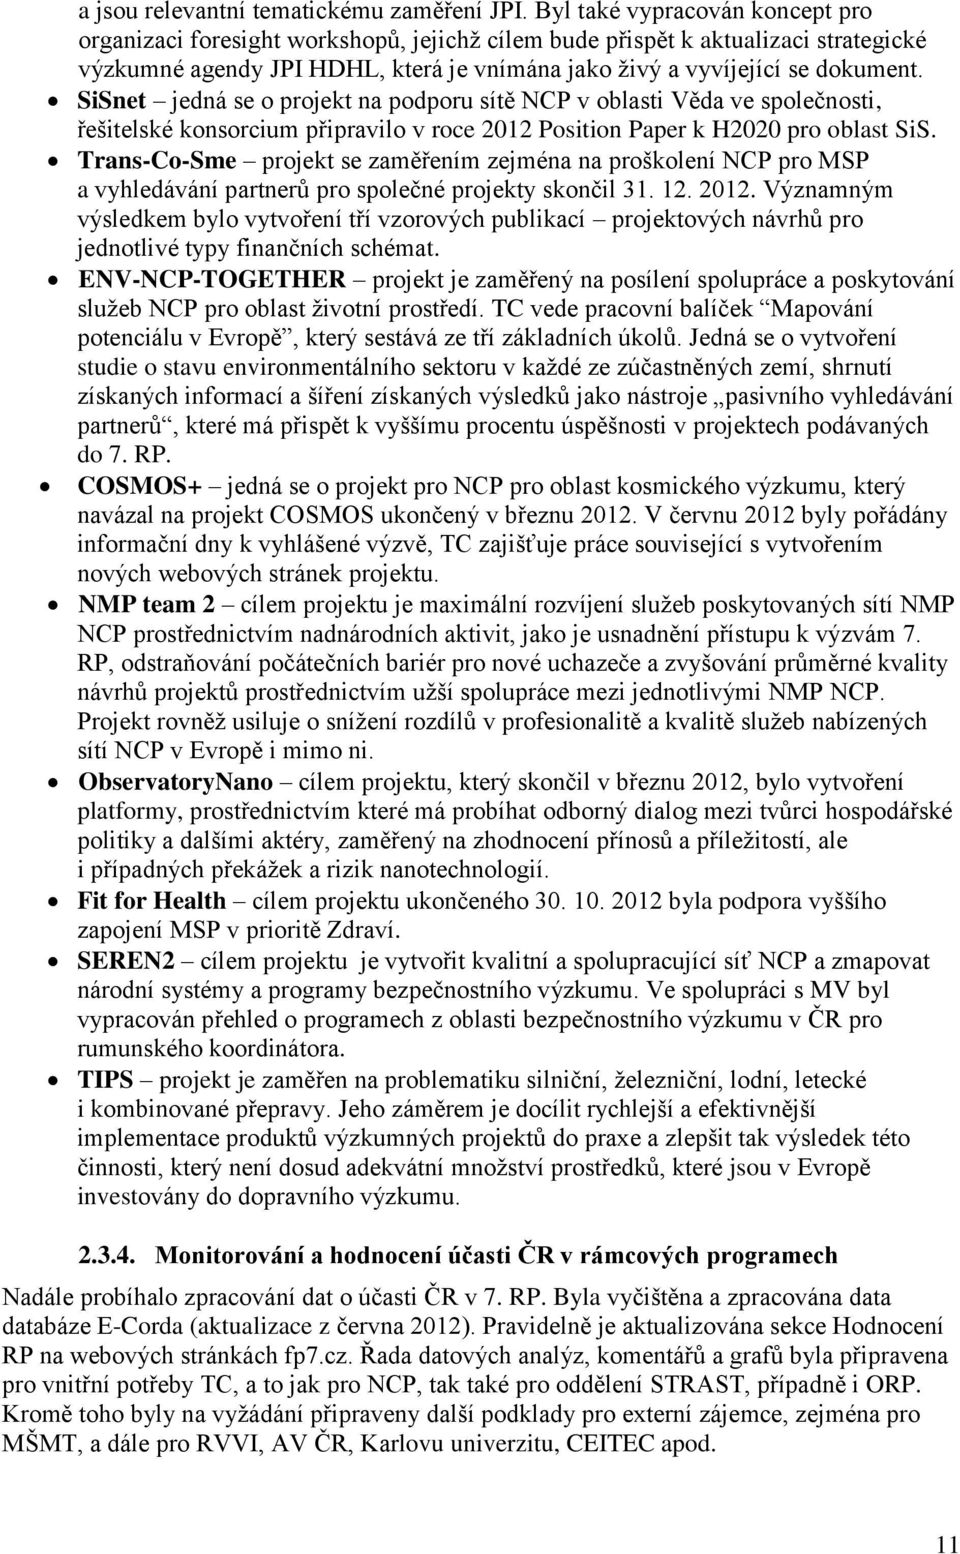 SiSnet jedná se o projekt na podporu sítě NCP v oblasti Věda ve společnosti, řešitelské konsorcium připravilo v roce 2012 Position Paper k H2020 pro oblast SiS.